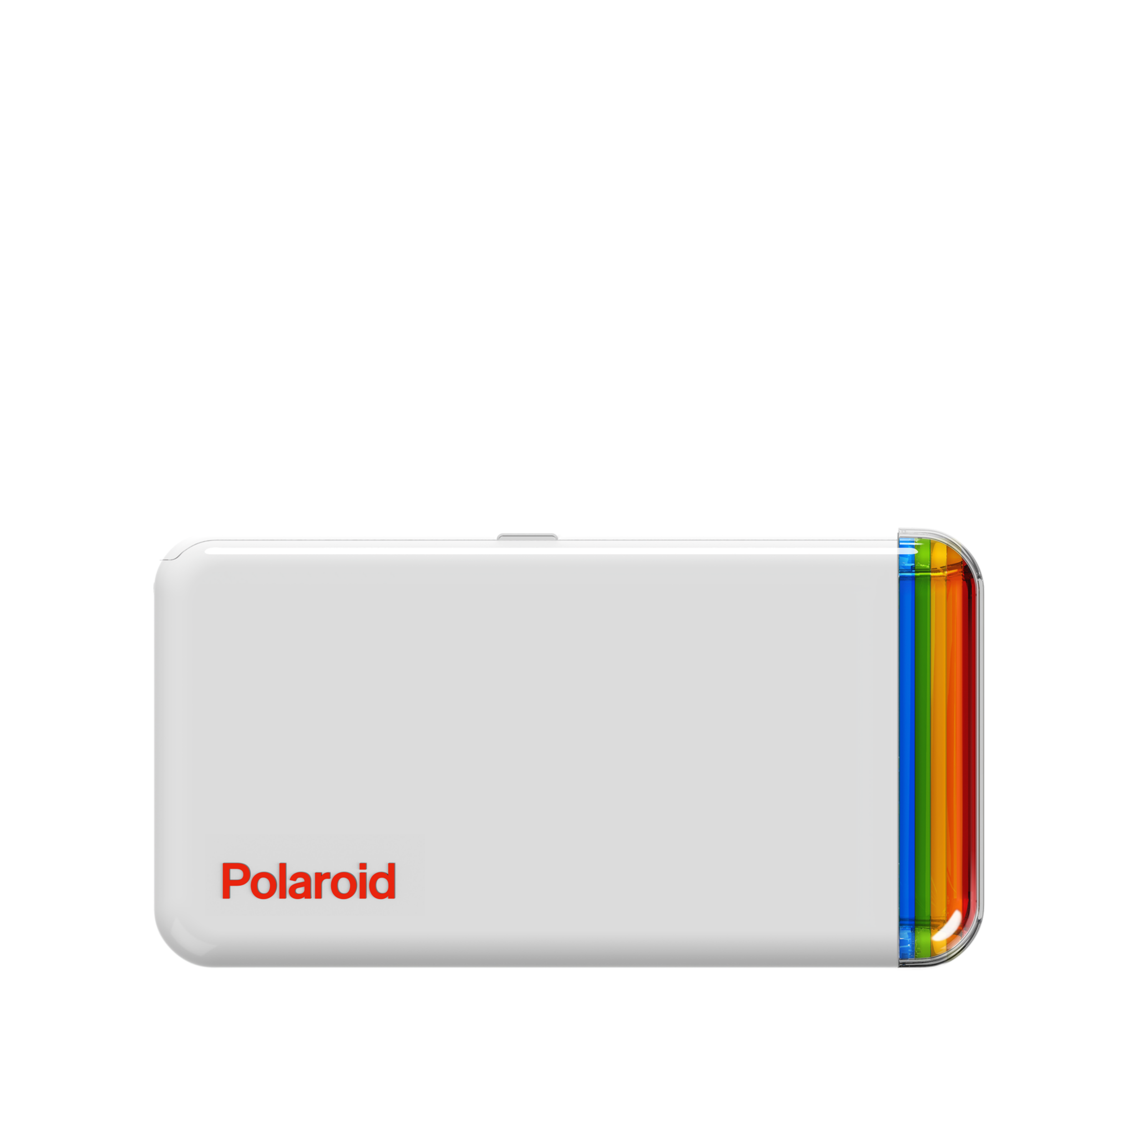 Pack con impresora fotográfica de bolsillo Polaroid Hi-Print 2x3 y  cartuchos de papel - Apple (ES)